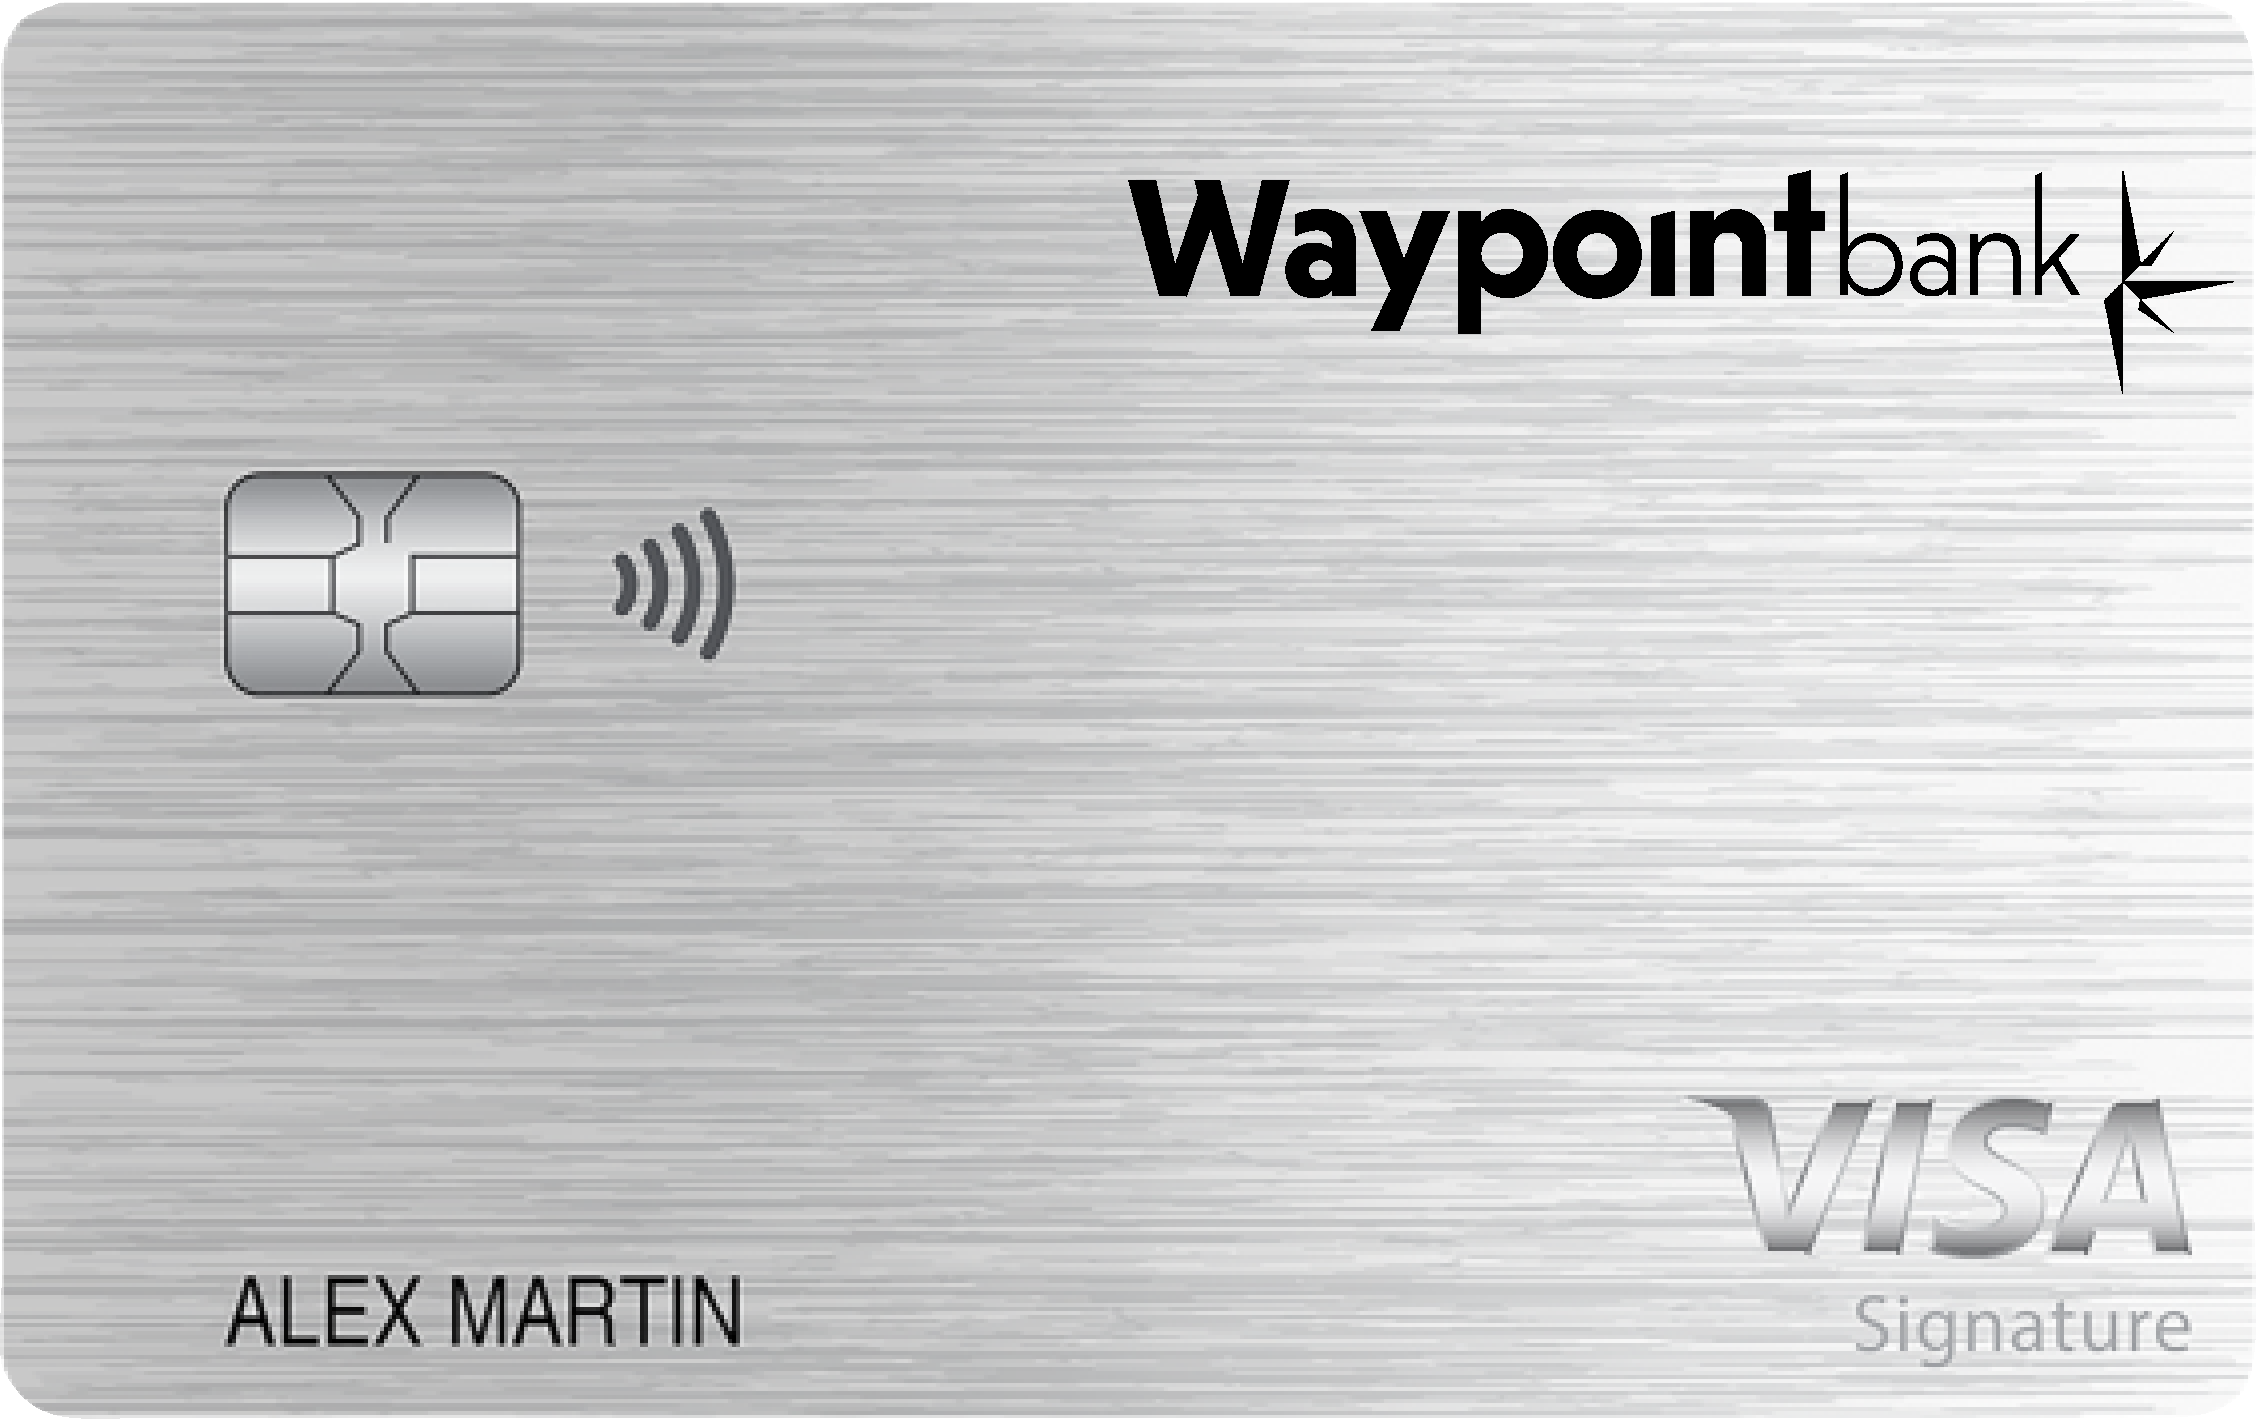 Waypoint Bank Everyday Rewards+ Card